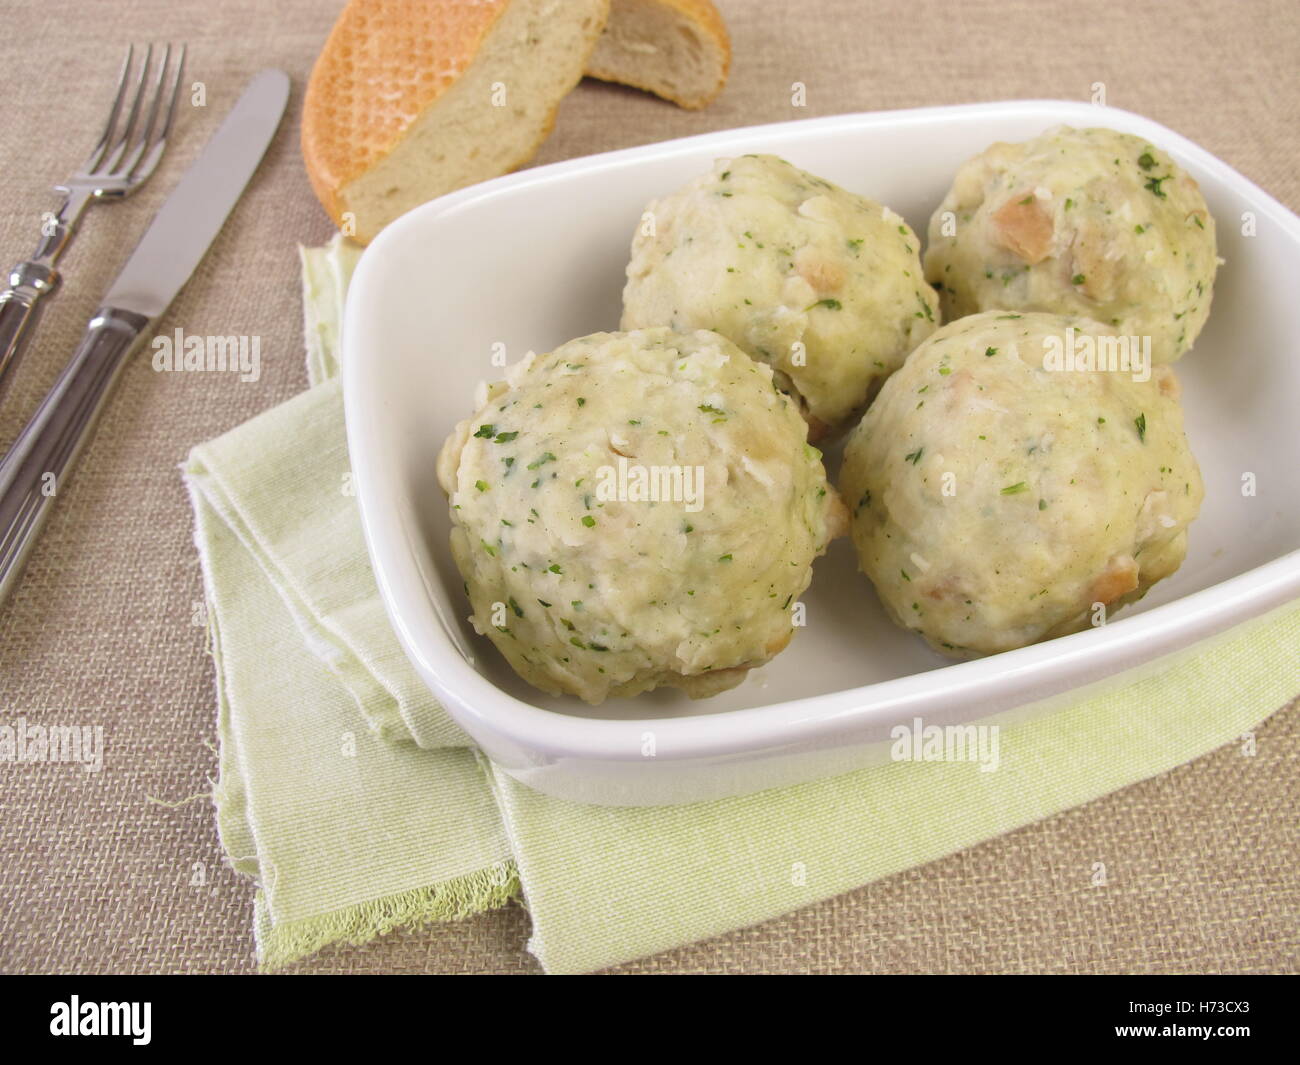 dumplings Stock Photo